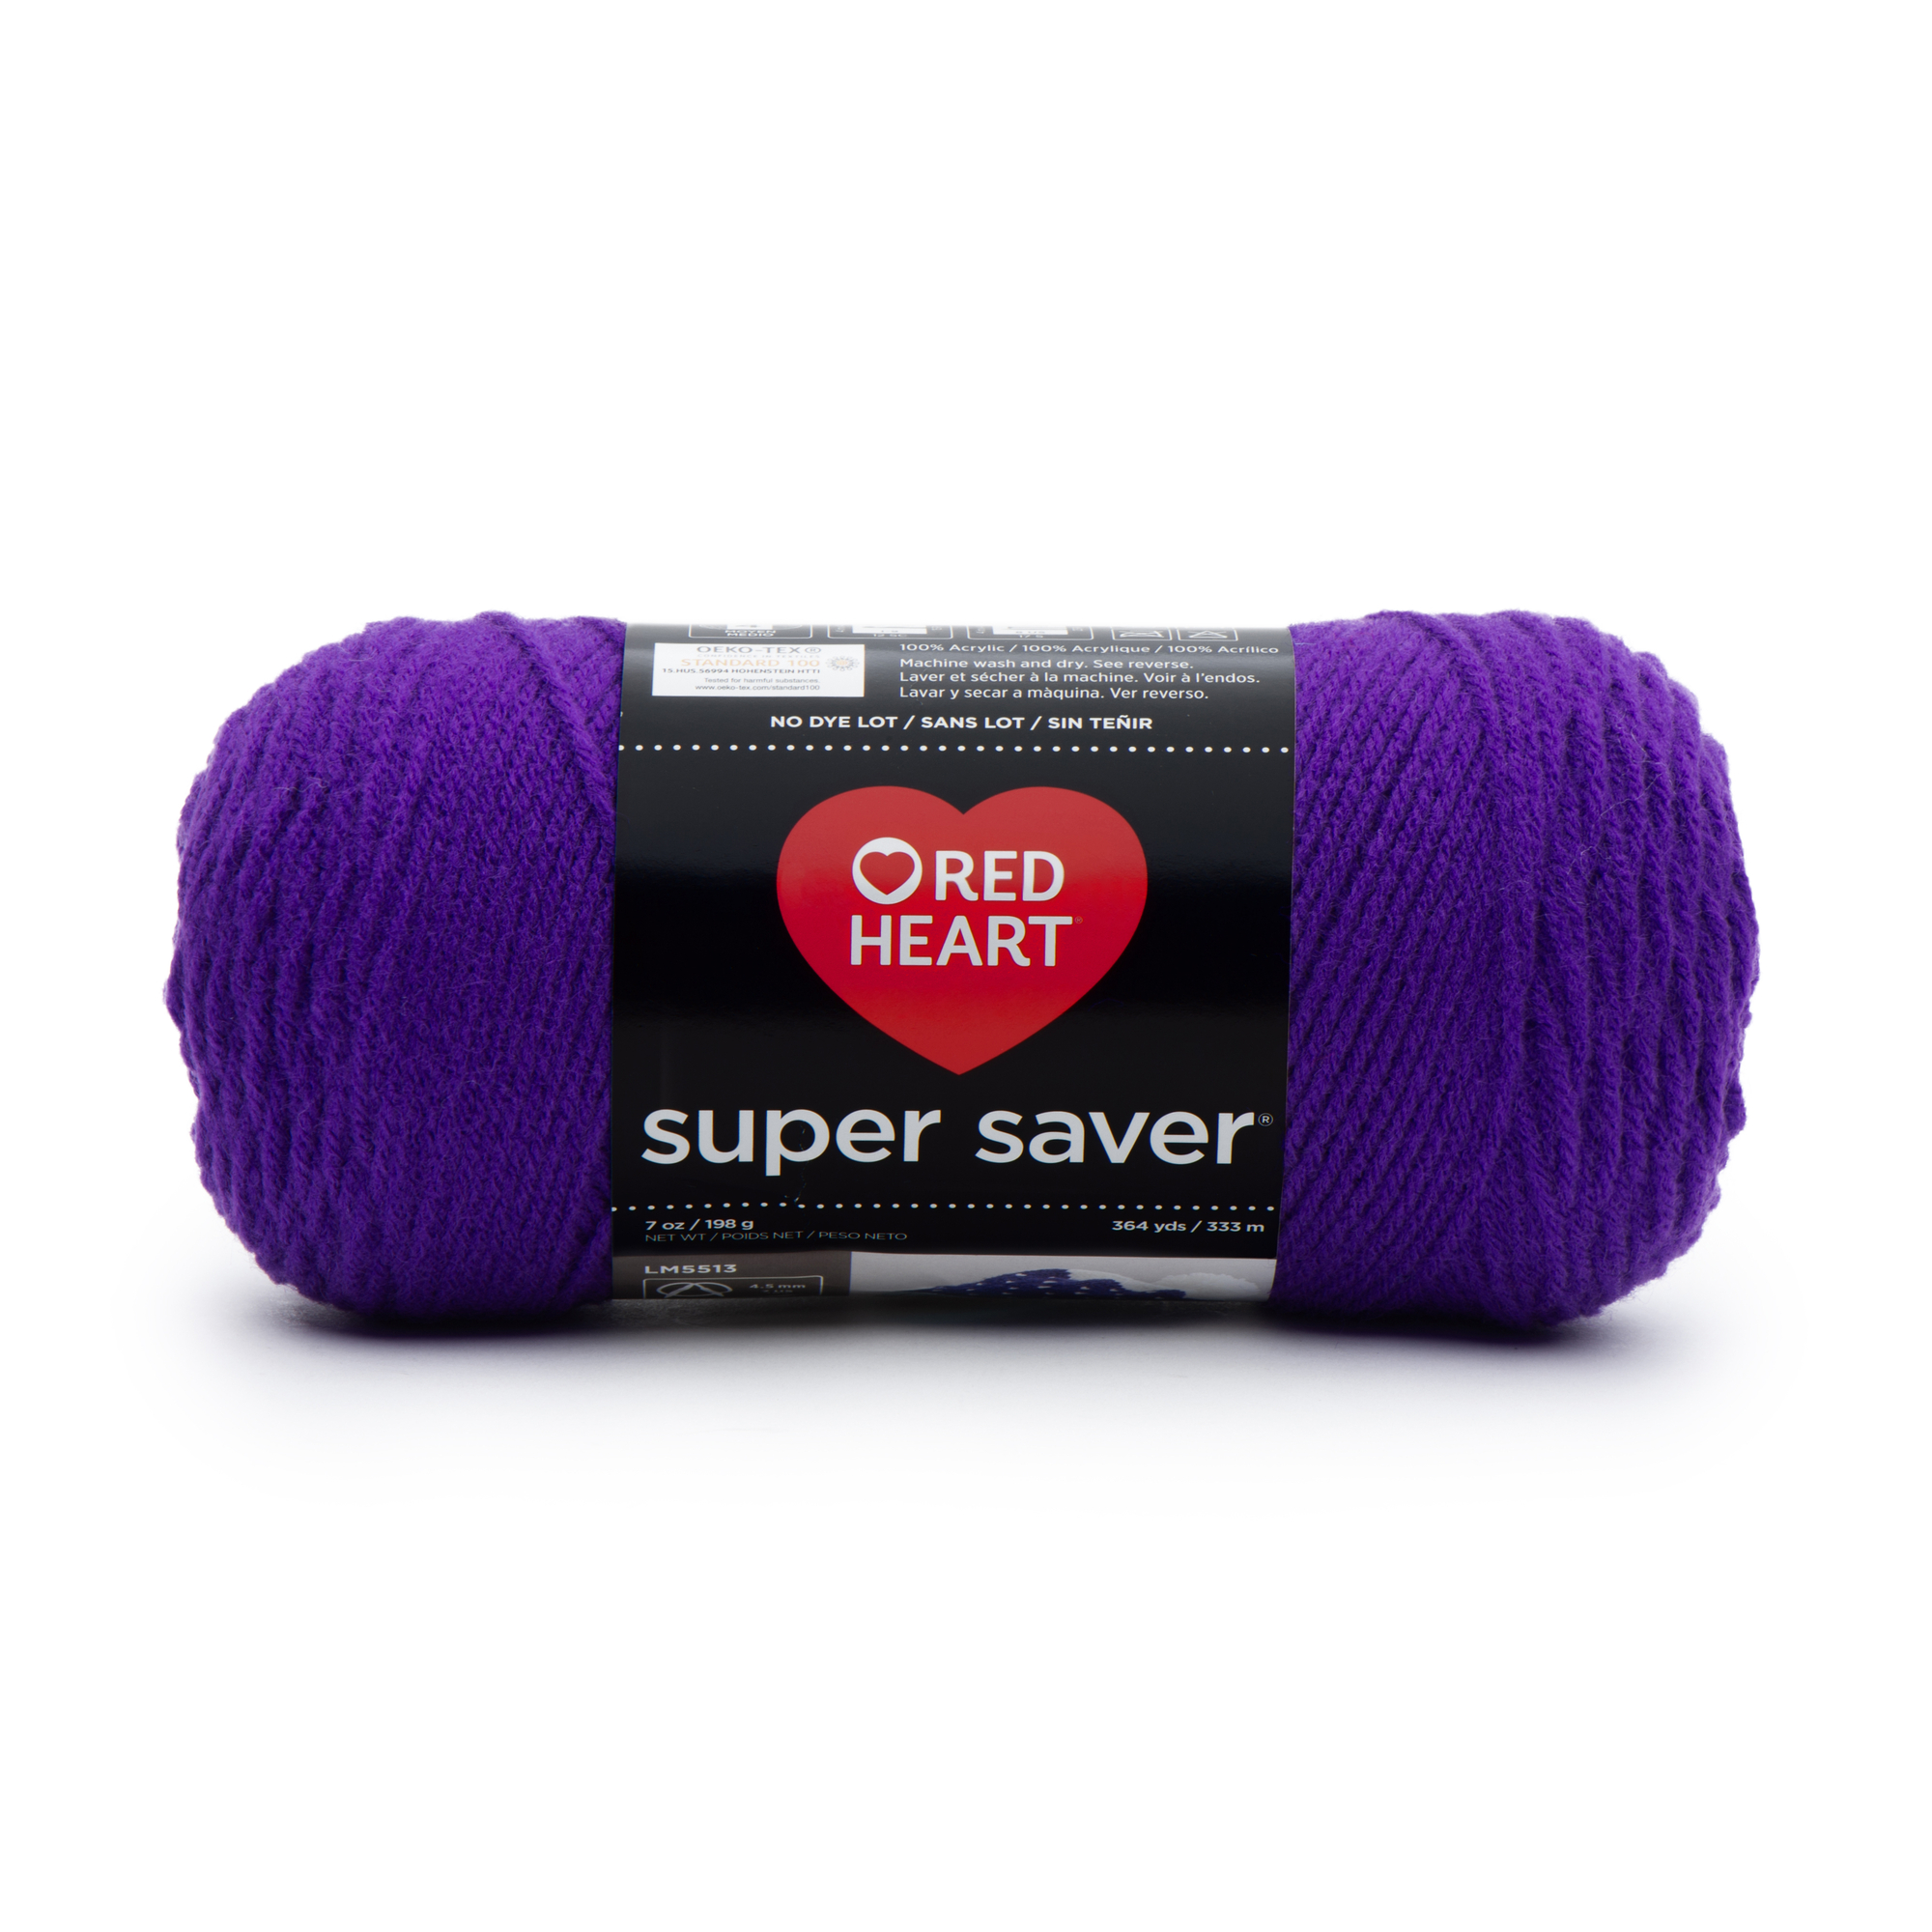 Red Heart Super Saver Yarn, Medium Acrylic Amethyst Yarn, 364 yd - image 1 of 12